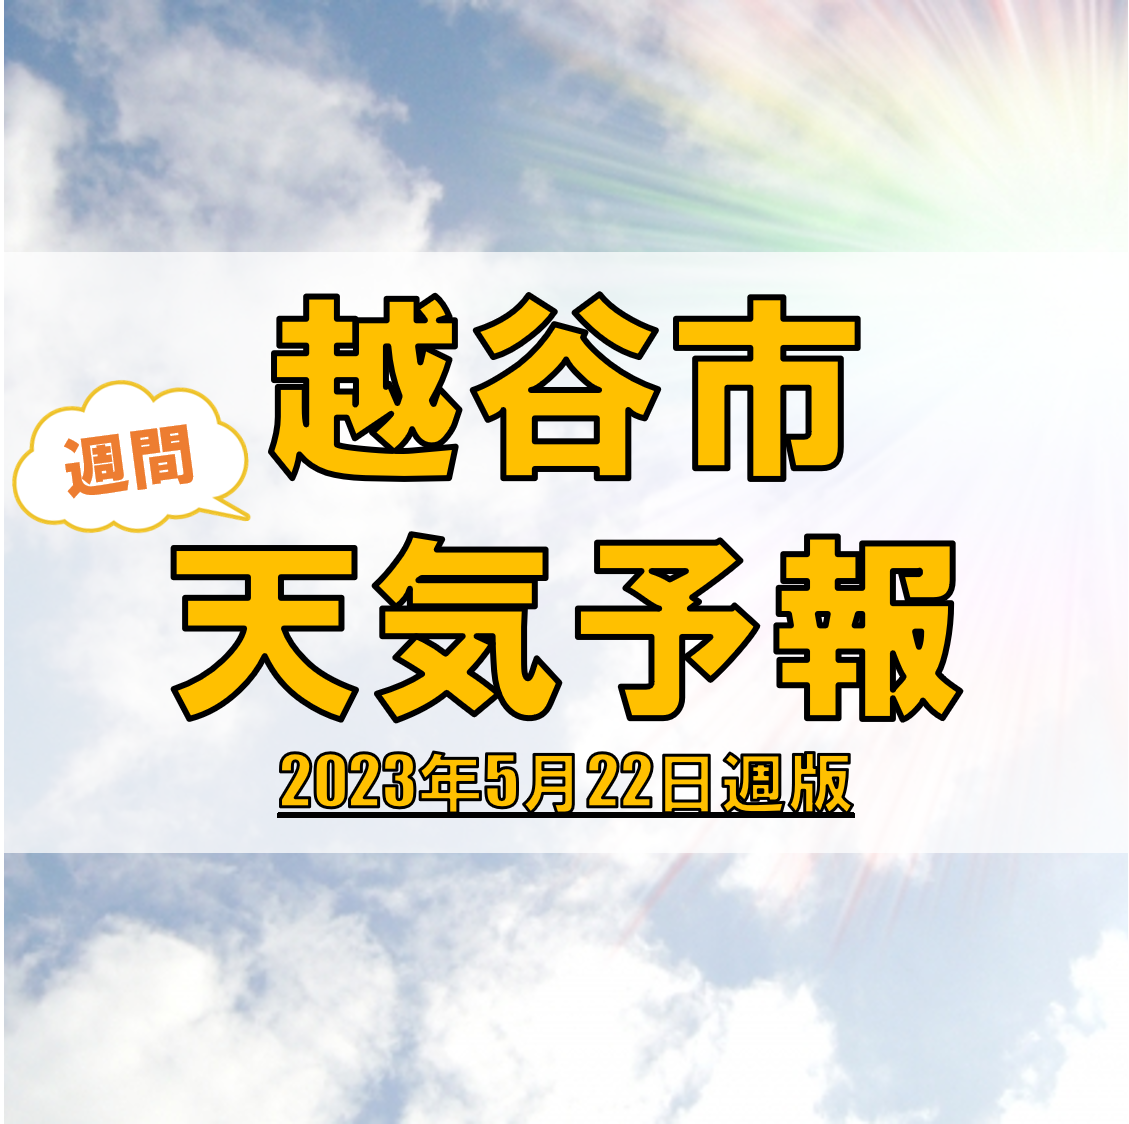 越谷市の天気 週間予報【2023年5月22日週】